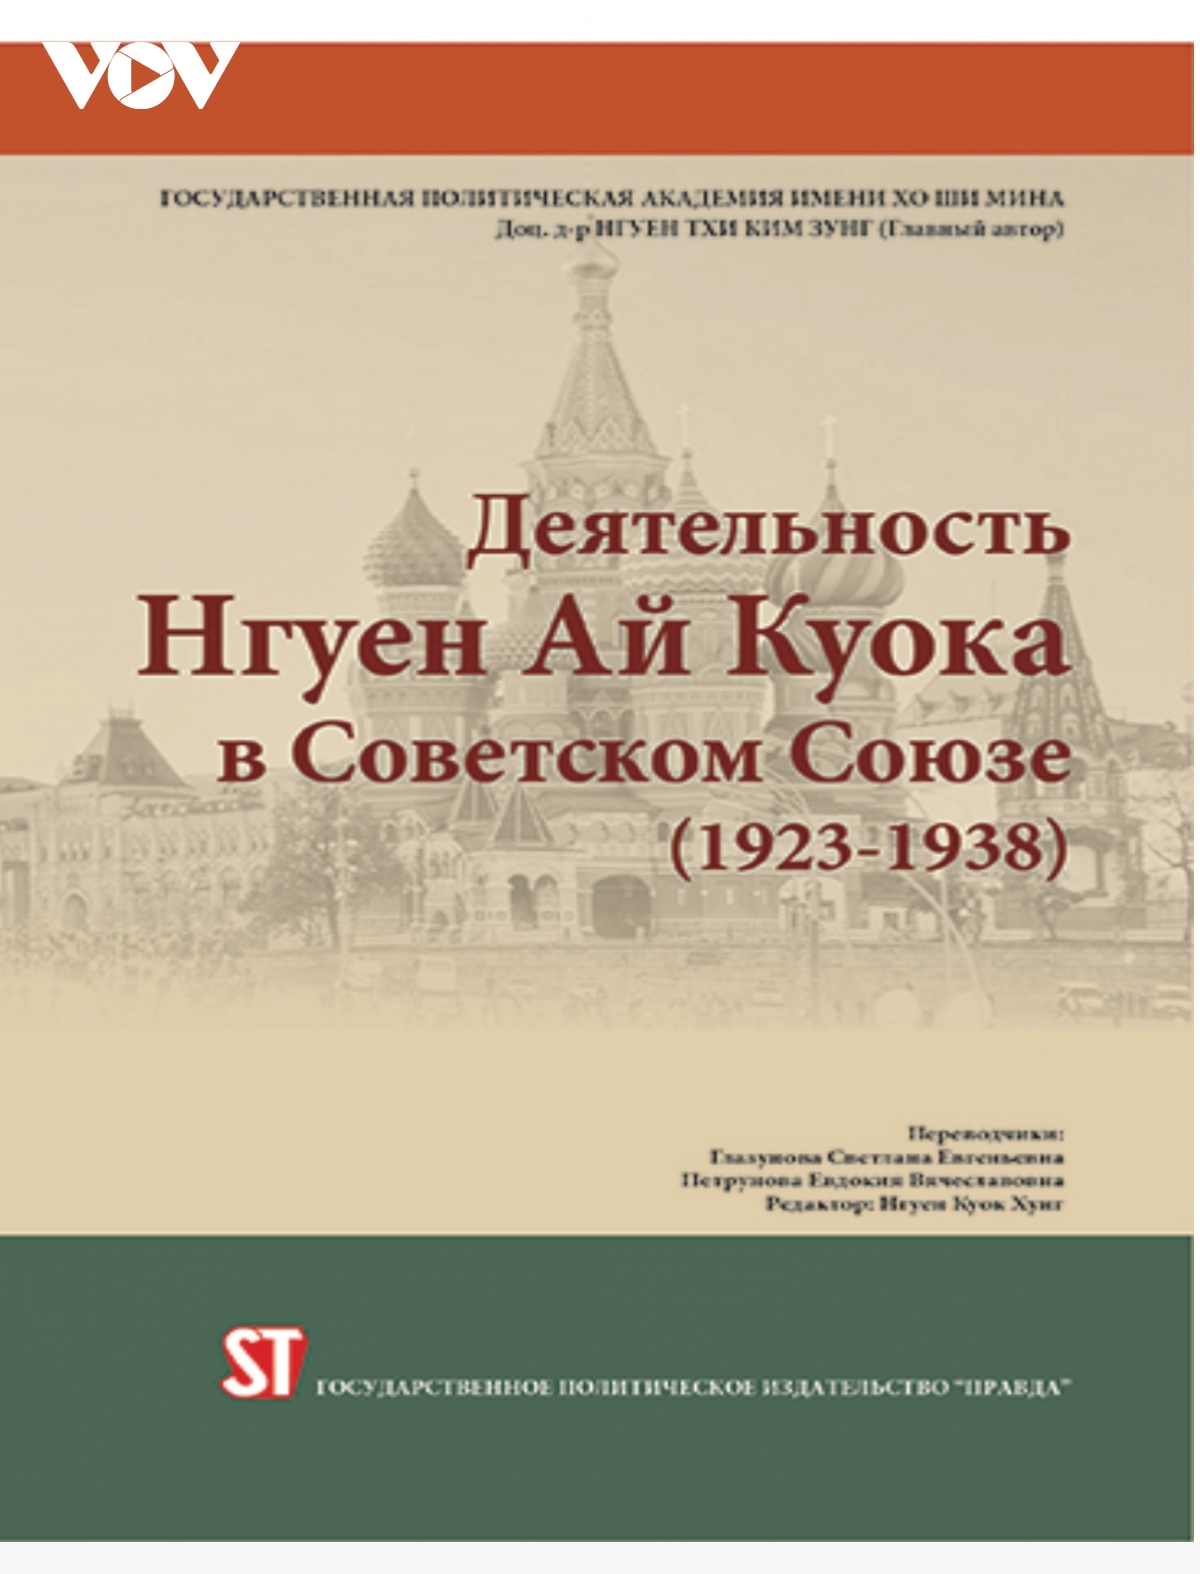 Dịch và giới thiệu sách về Bác với độc giả Nga để hai dân tộc thêm gắn bó